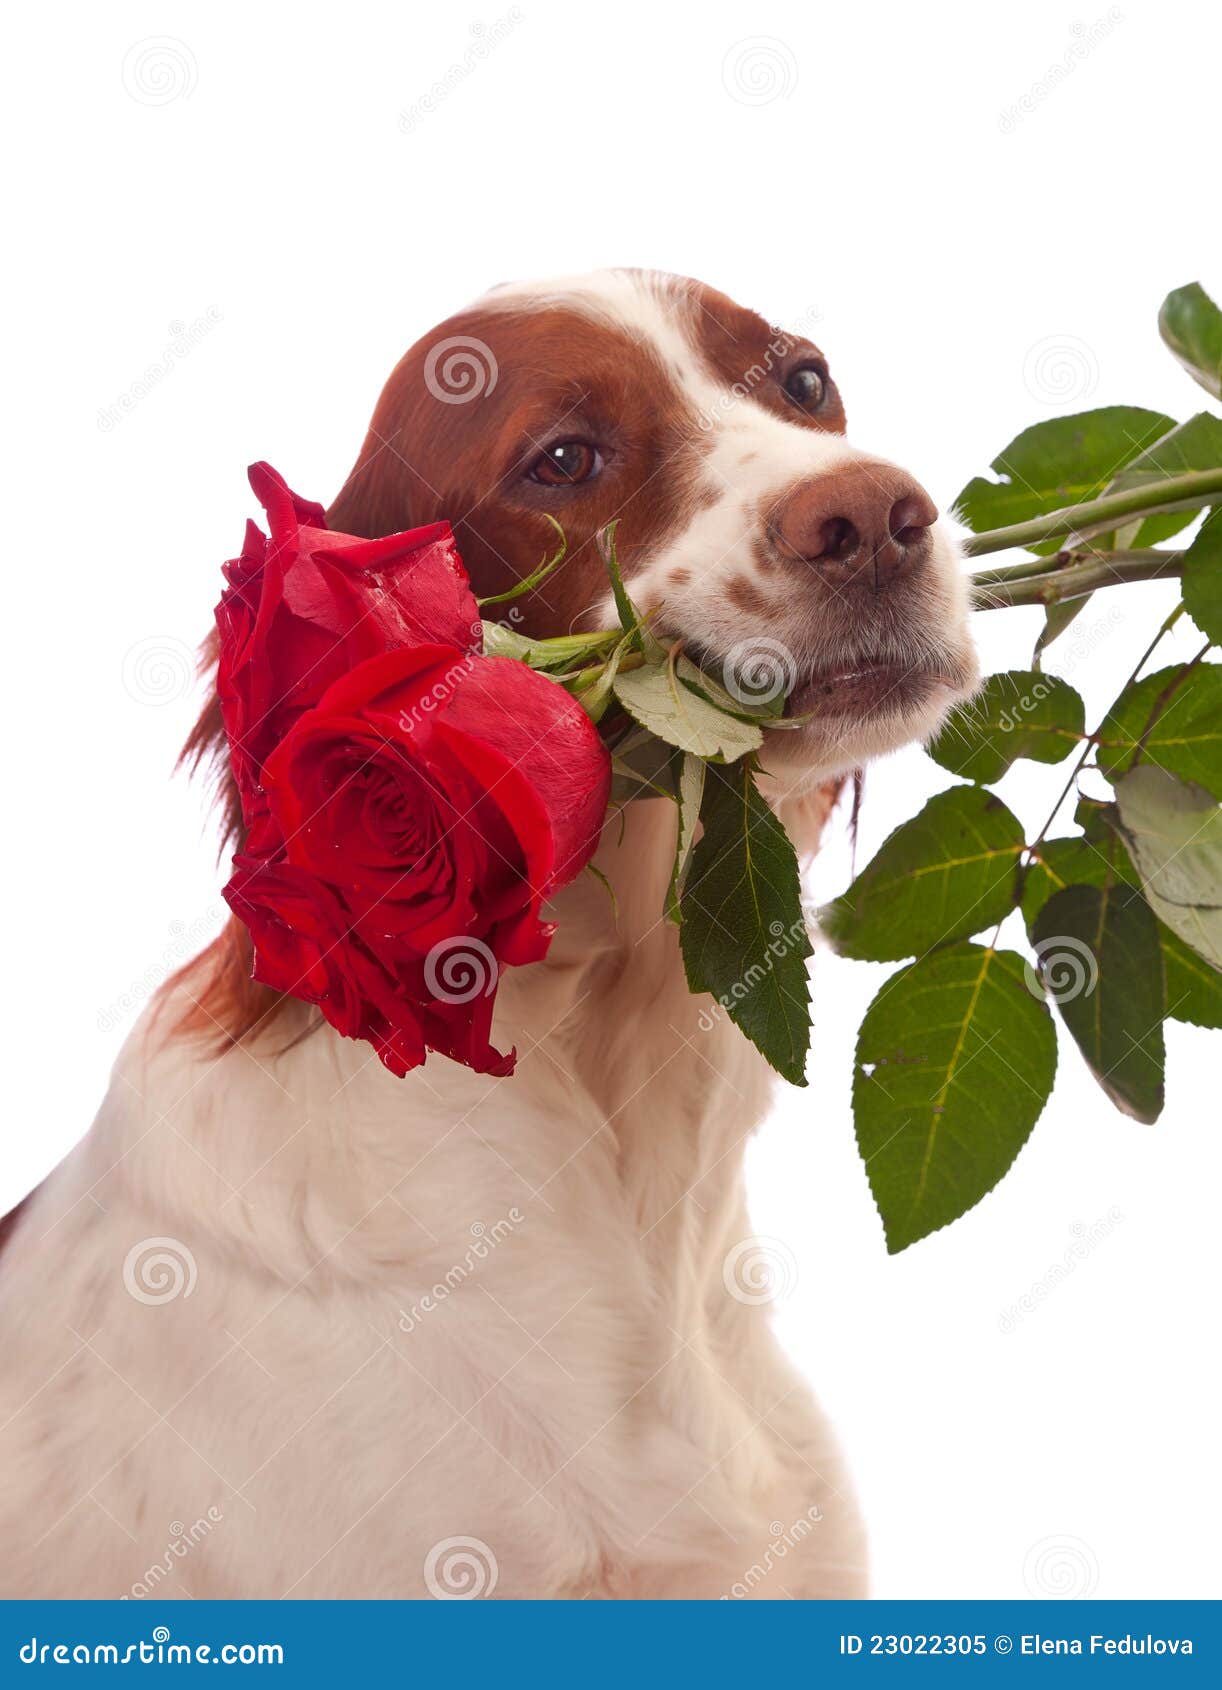 perro-con-tres-rosas-rojas-en-boca-23022305.jpg